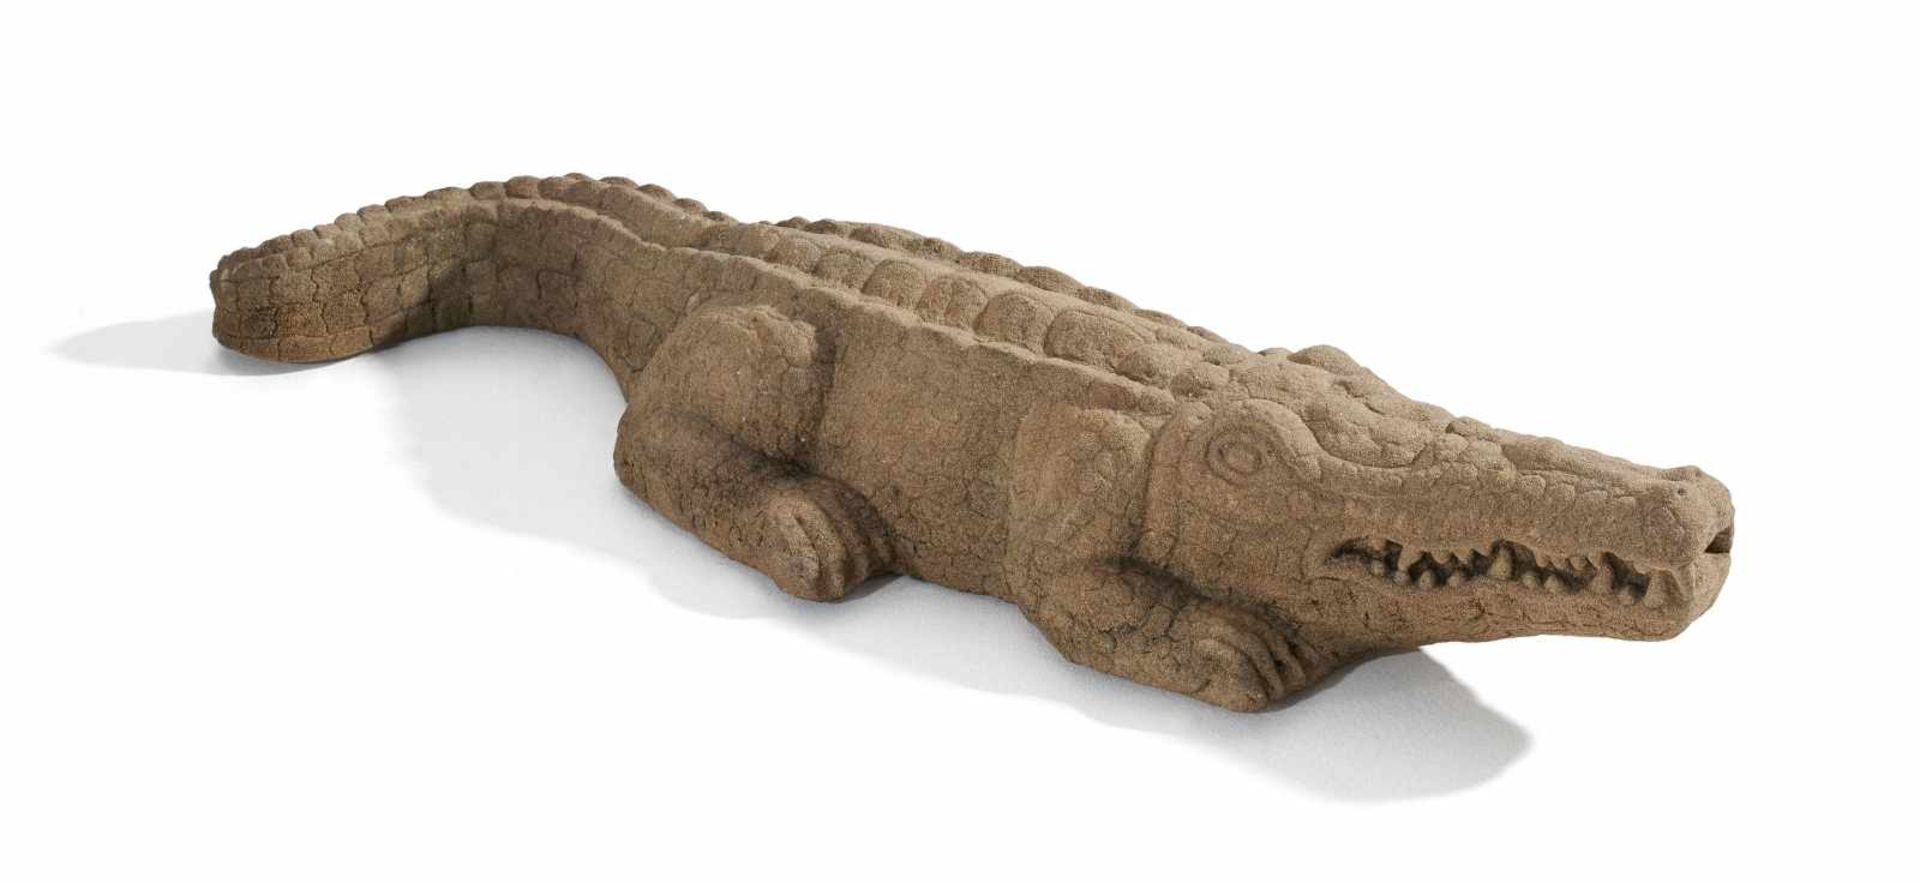 EXTREM SELTENE DARSTELLUNG EINES KROKODILS. Khmer. Bayon-Periode. 12. Jh. Sandstein. Das Krokodil